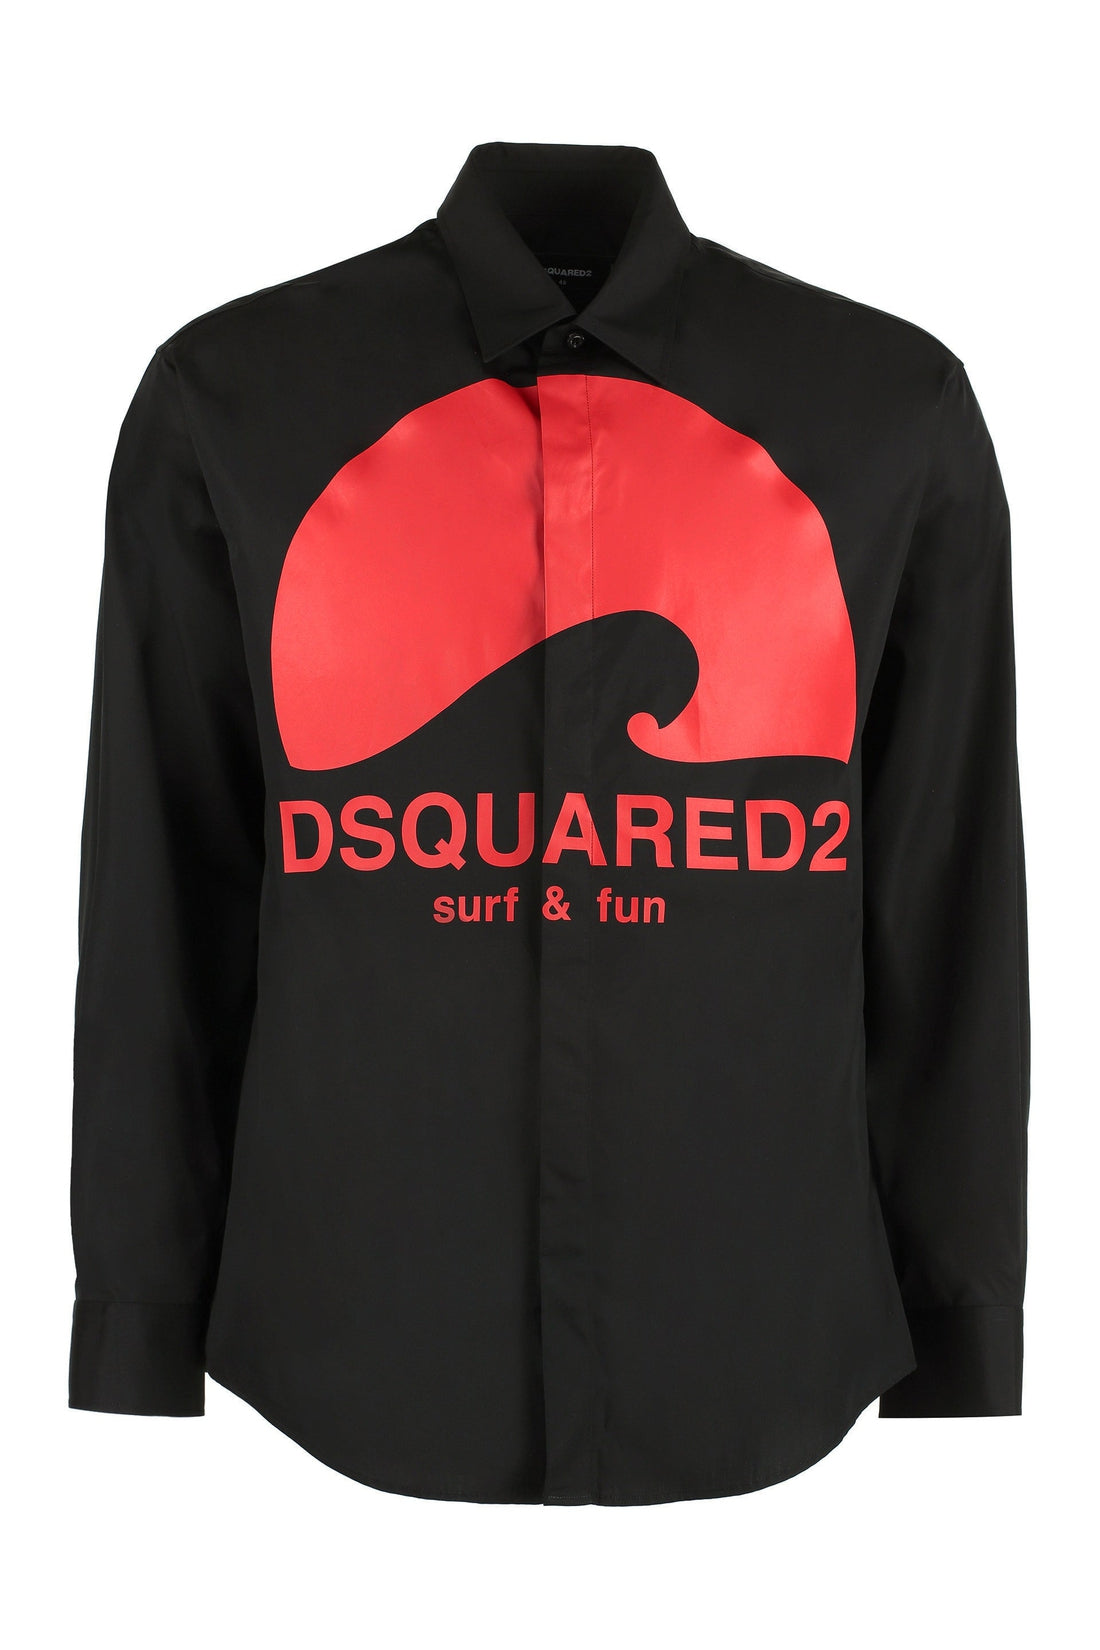 Dsquared2-OUTLET-SALE-Cotton shirt-ARCHIVIST